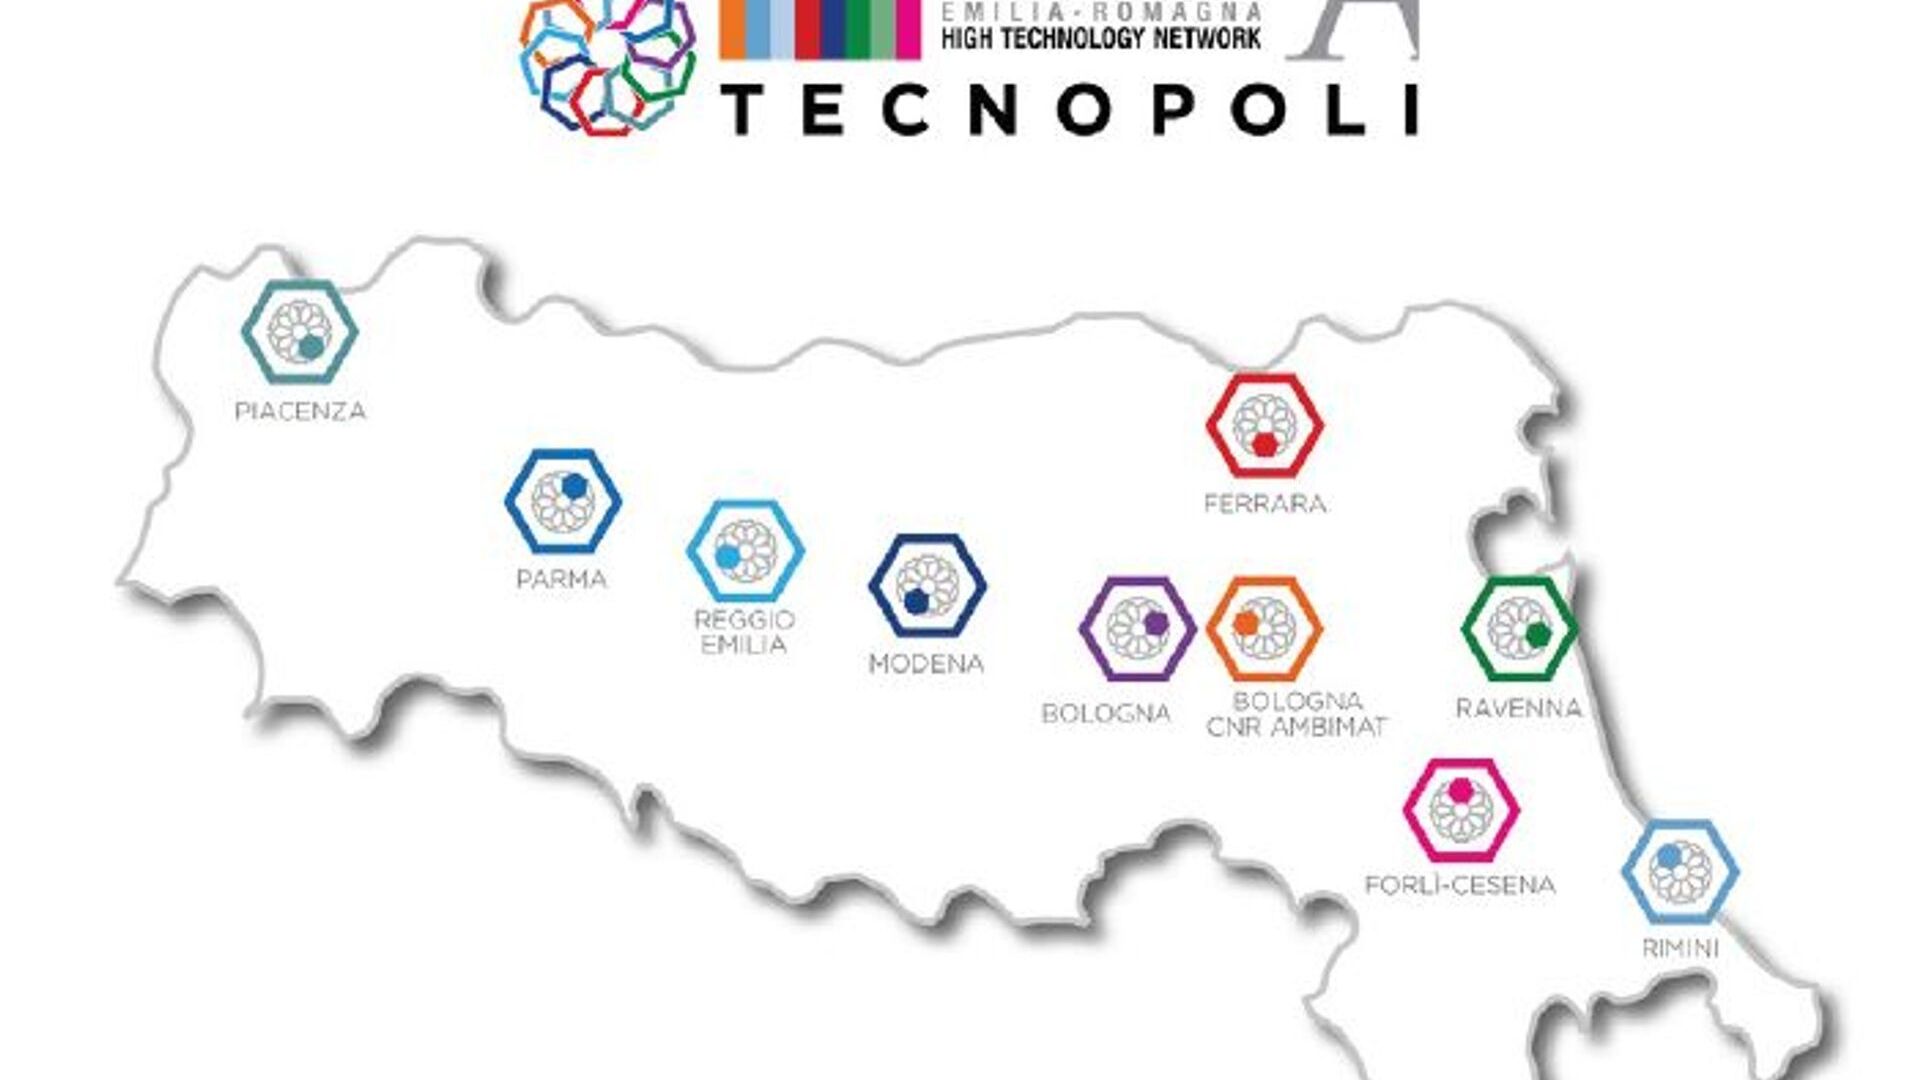 شبکه فناوری پیشرفته منطقه امیلیا رومانیا